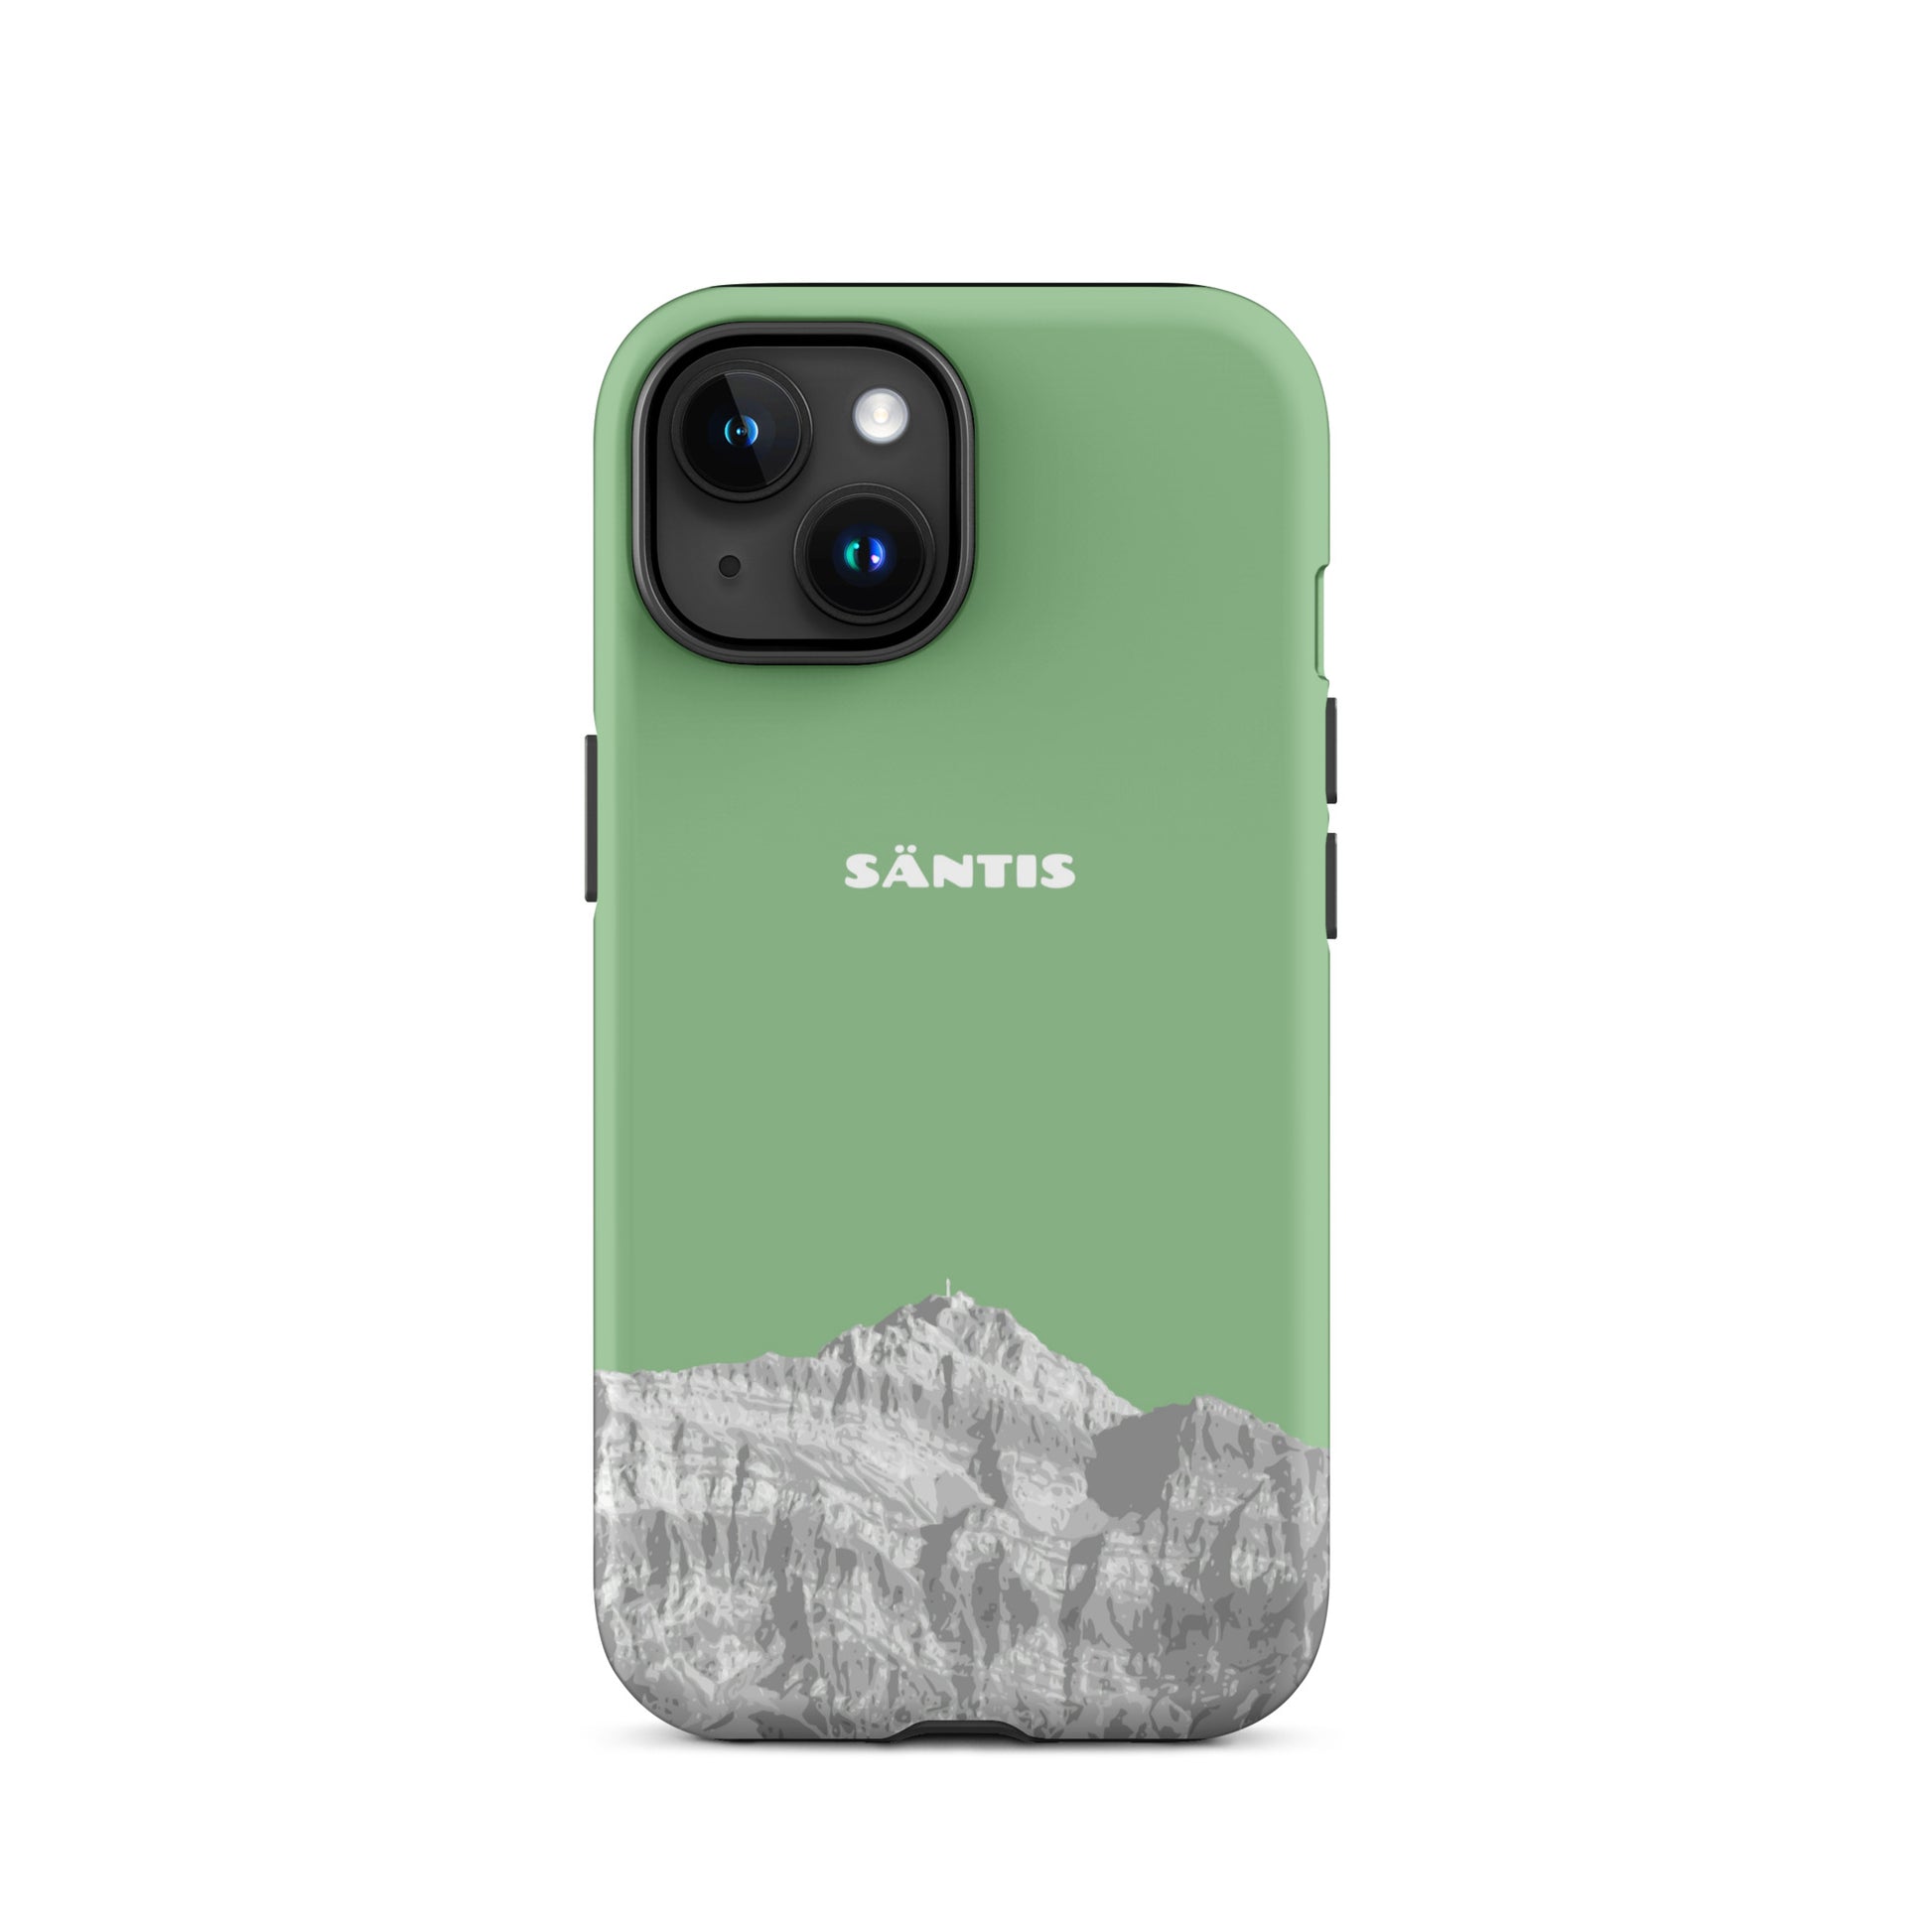 Hülle für das iPhone 15 von Apple in der Farbe Hellgrün, dass den Säntis im Alpstein zeigt.